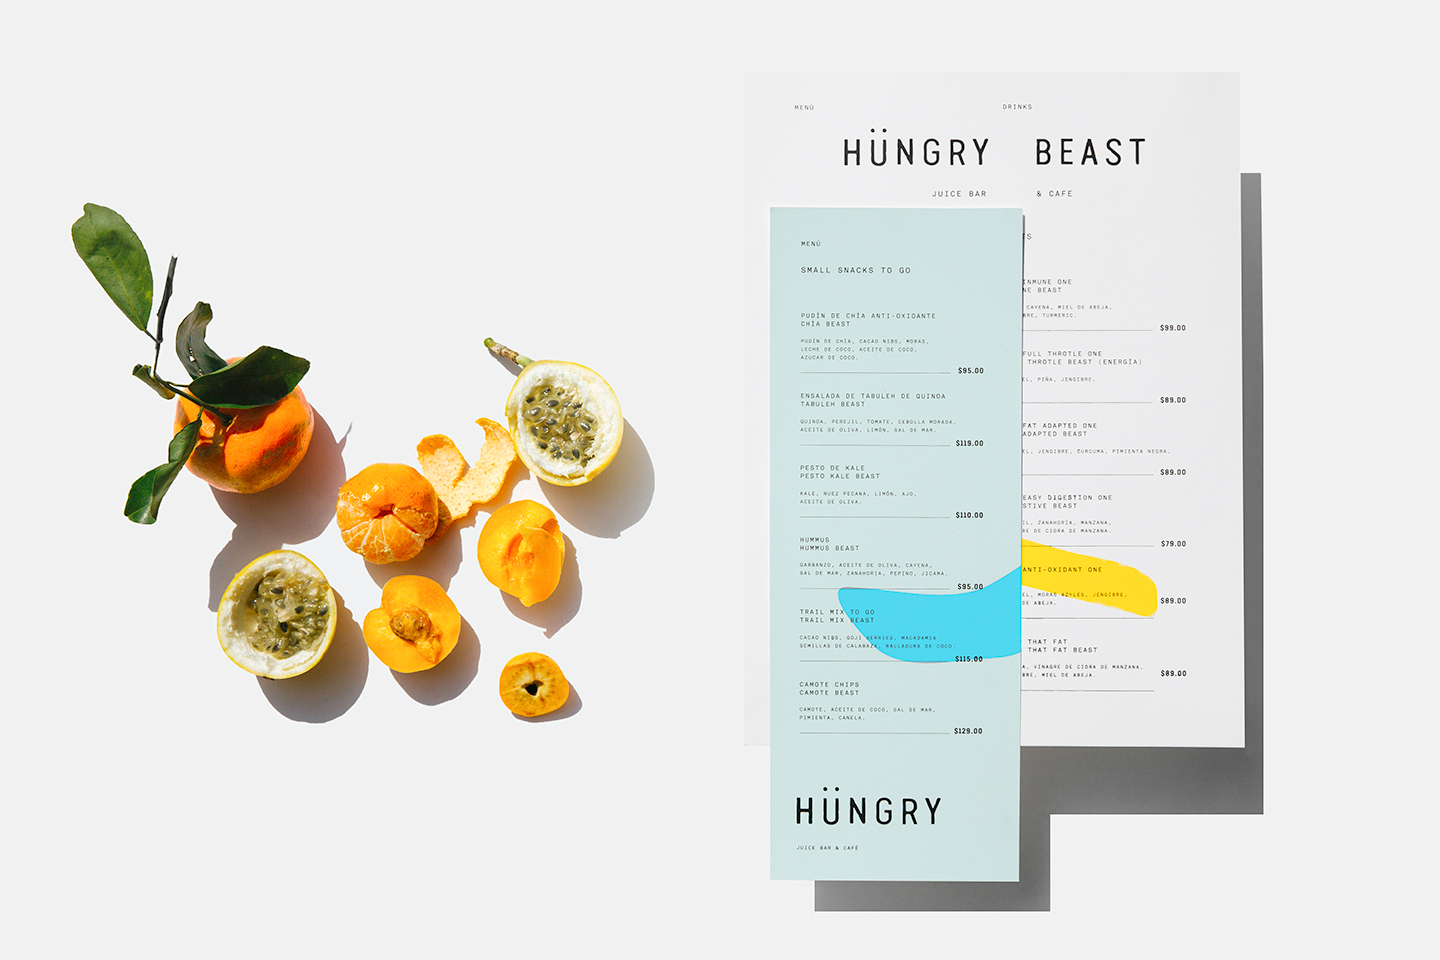 Menu Design – Hüngry Beast by Savvy, Mexico